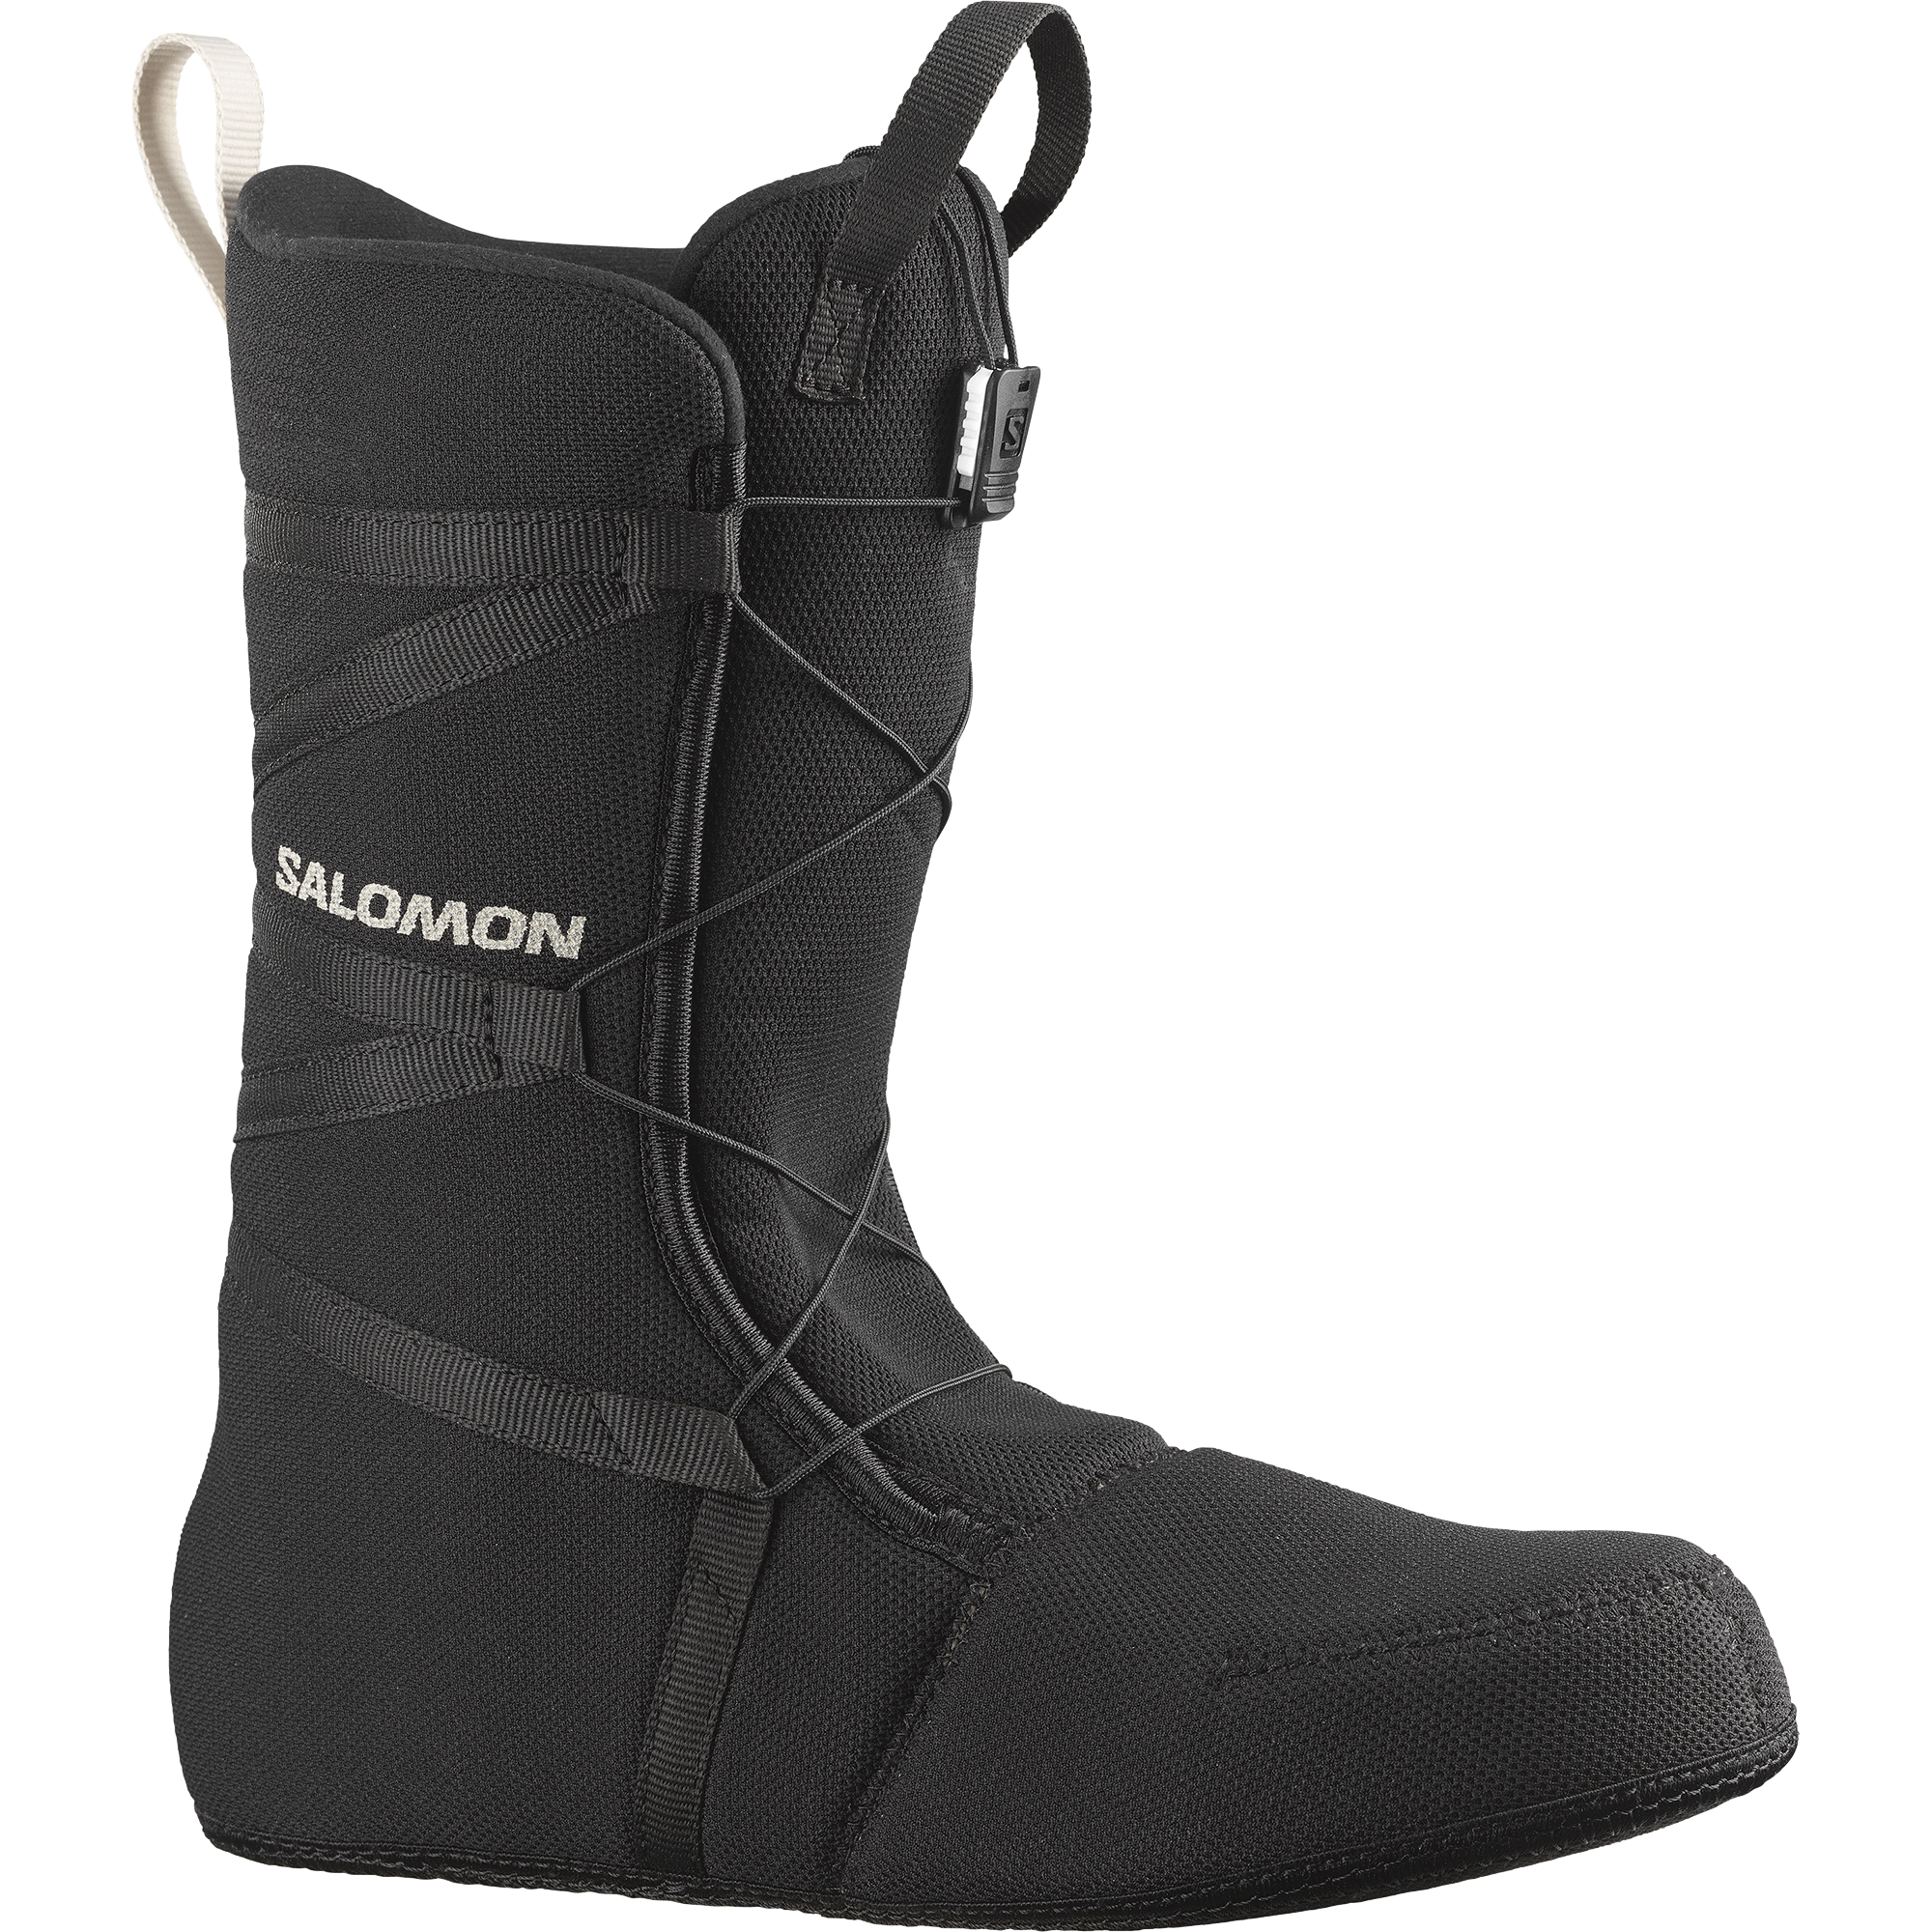 SALOMON サロモン スノーボードブーツFACTION BOA 29.0cm - ブーツ(男性用)